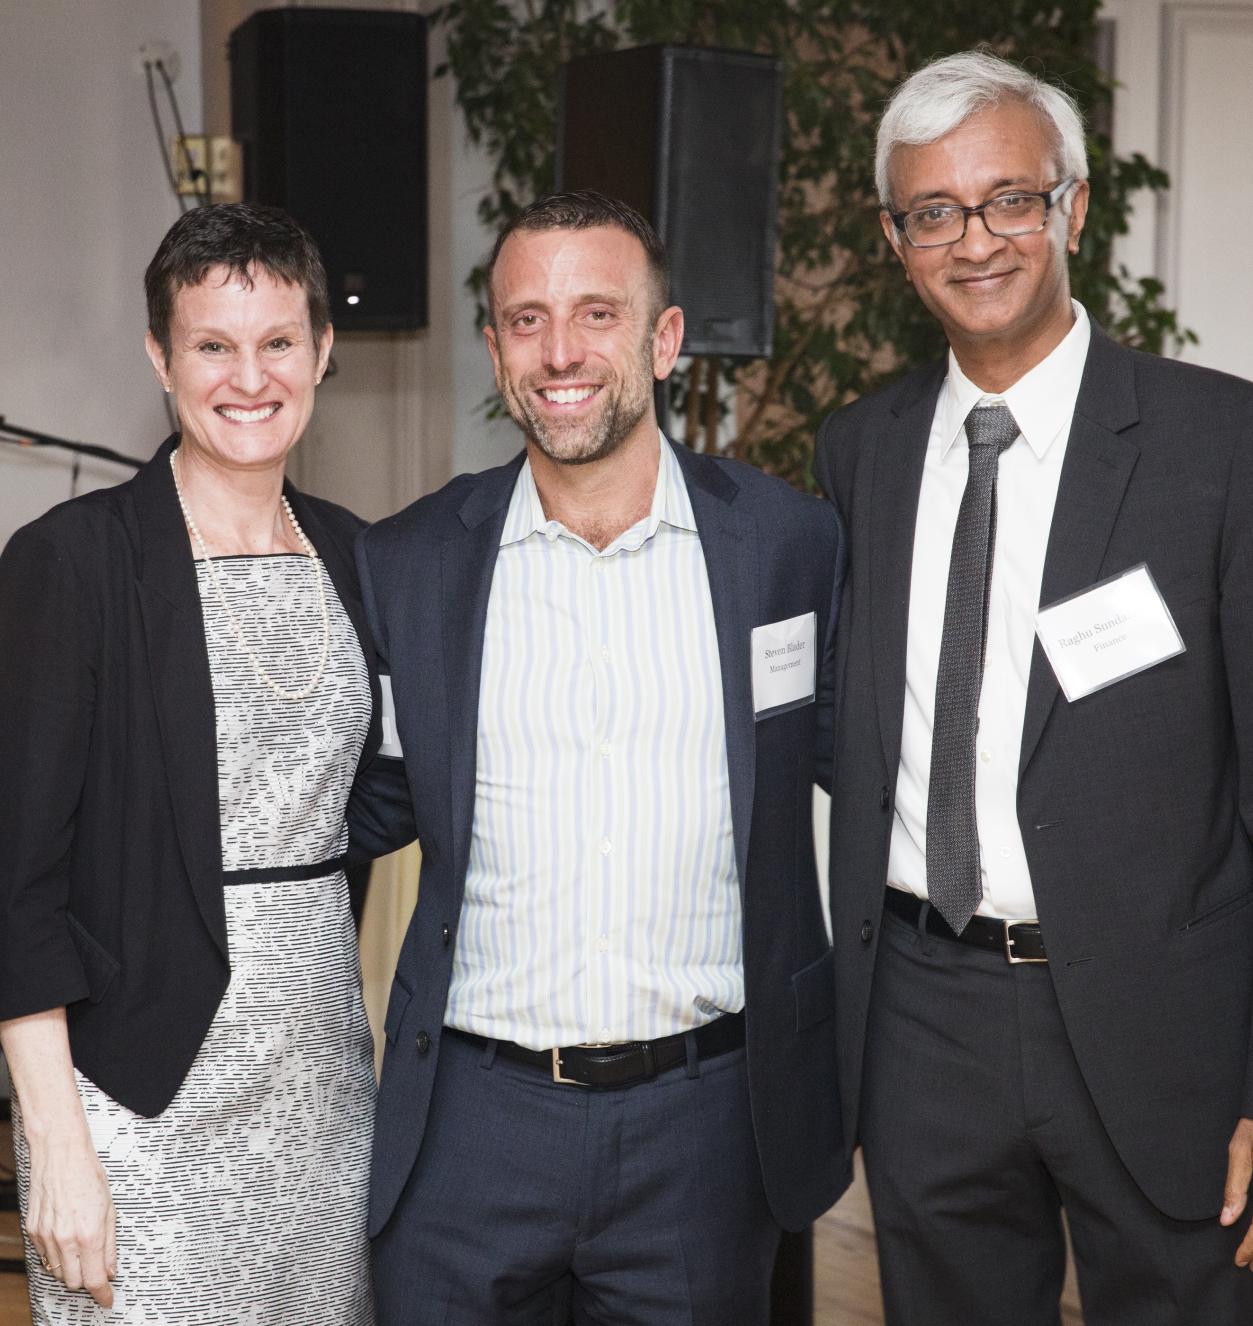 Elizabeth Morrison, Steve Blader, and Raghu Sundaram at faculty awards dinner